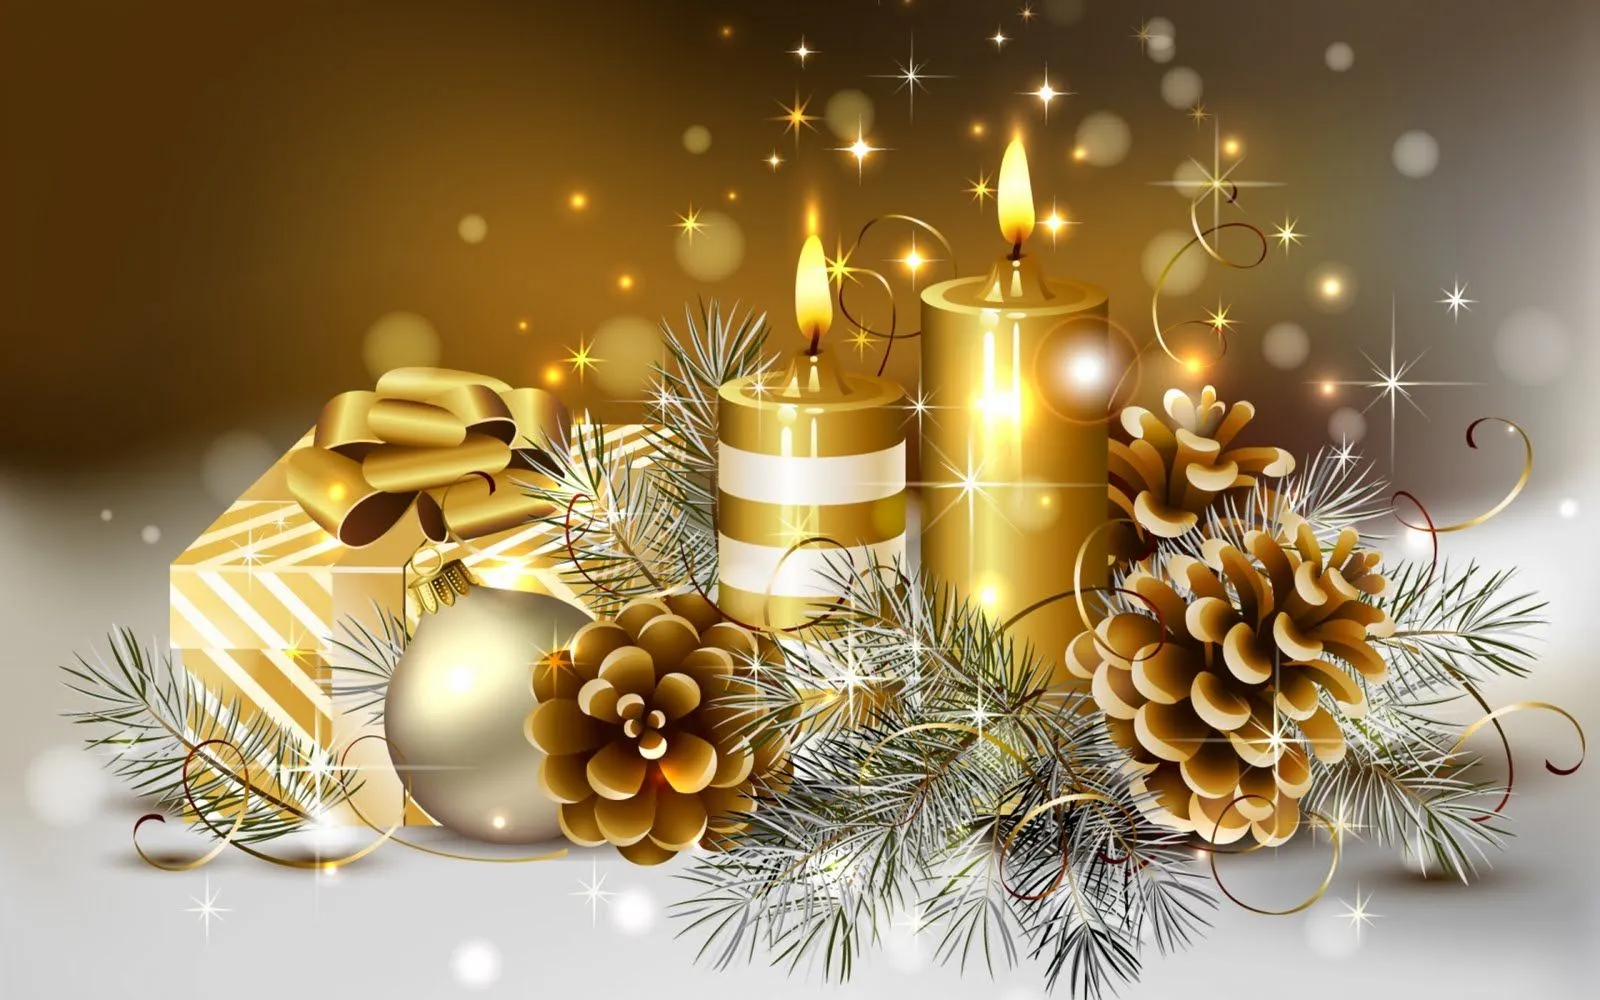 Idool Adornos navideños en color dorado - Fondos para Navidad